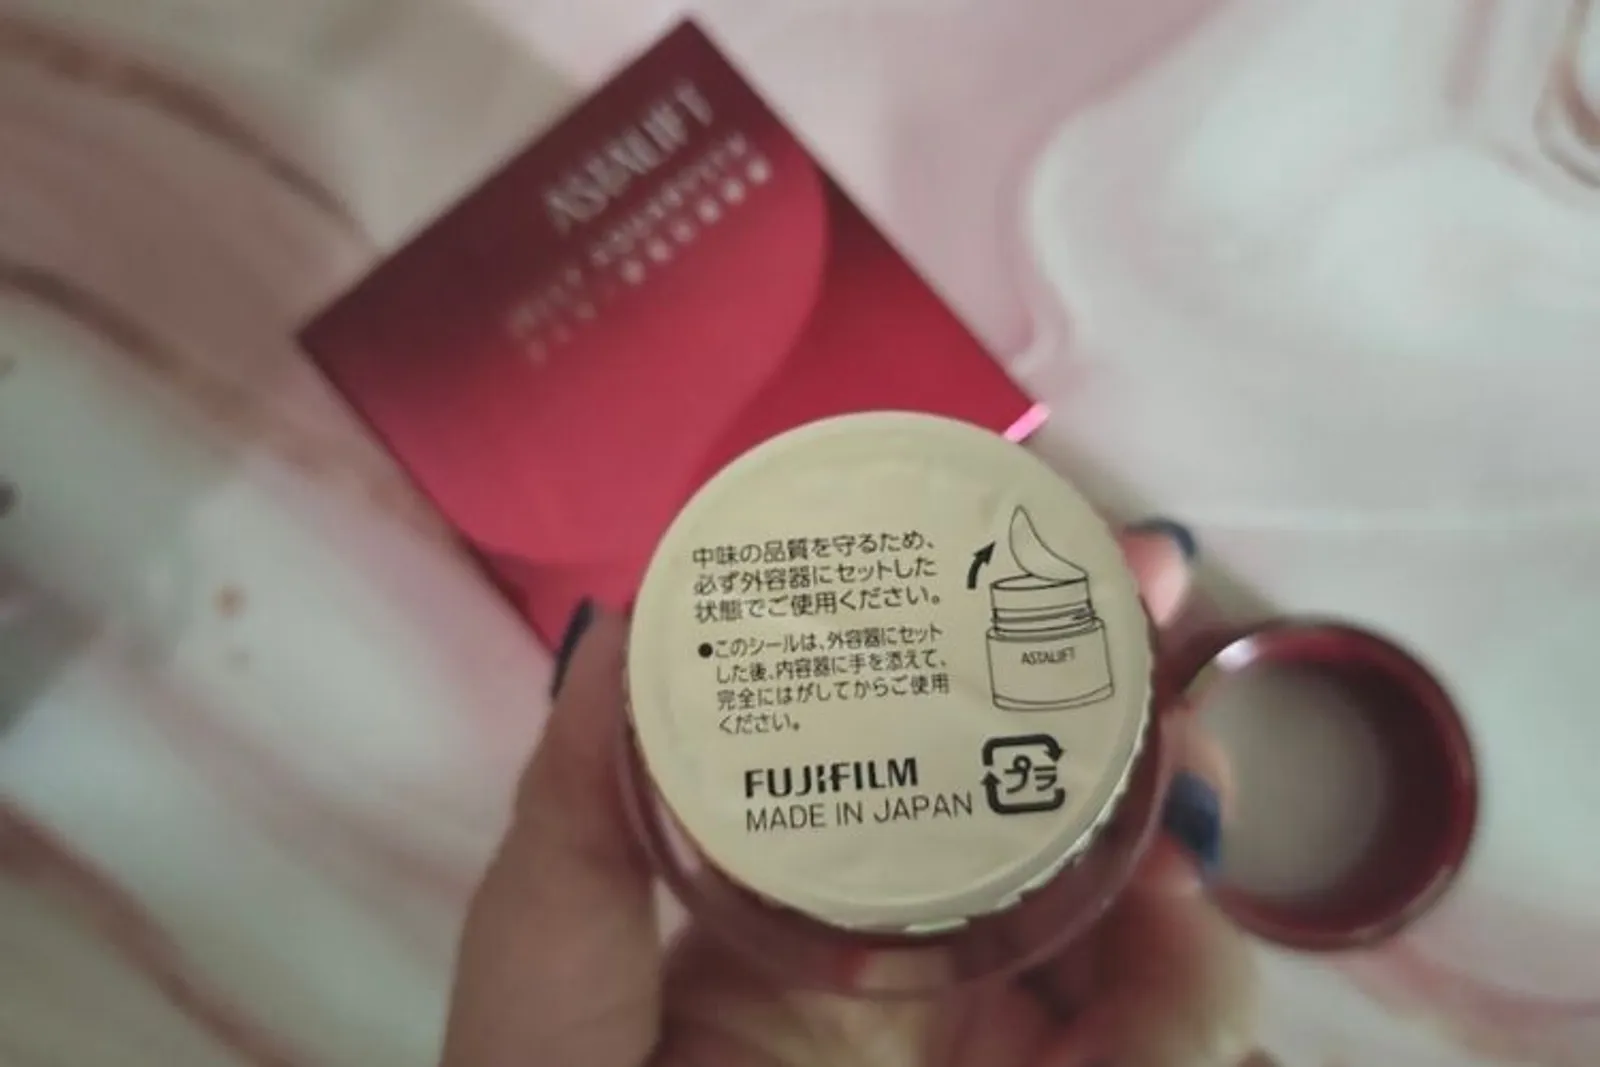 Review: Pakai Teknologi Kamera, Begini Sensasi Skincare dari Fujifilm